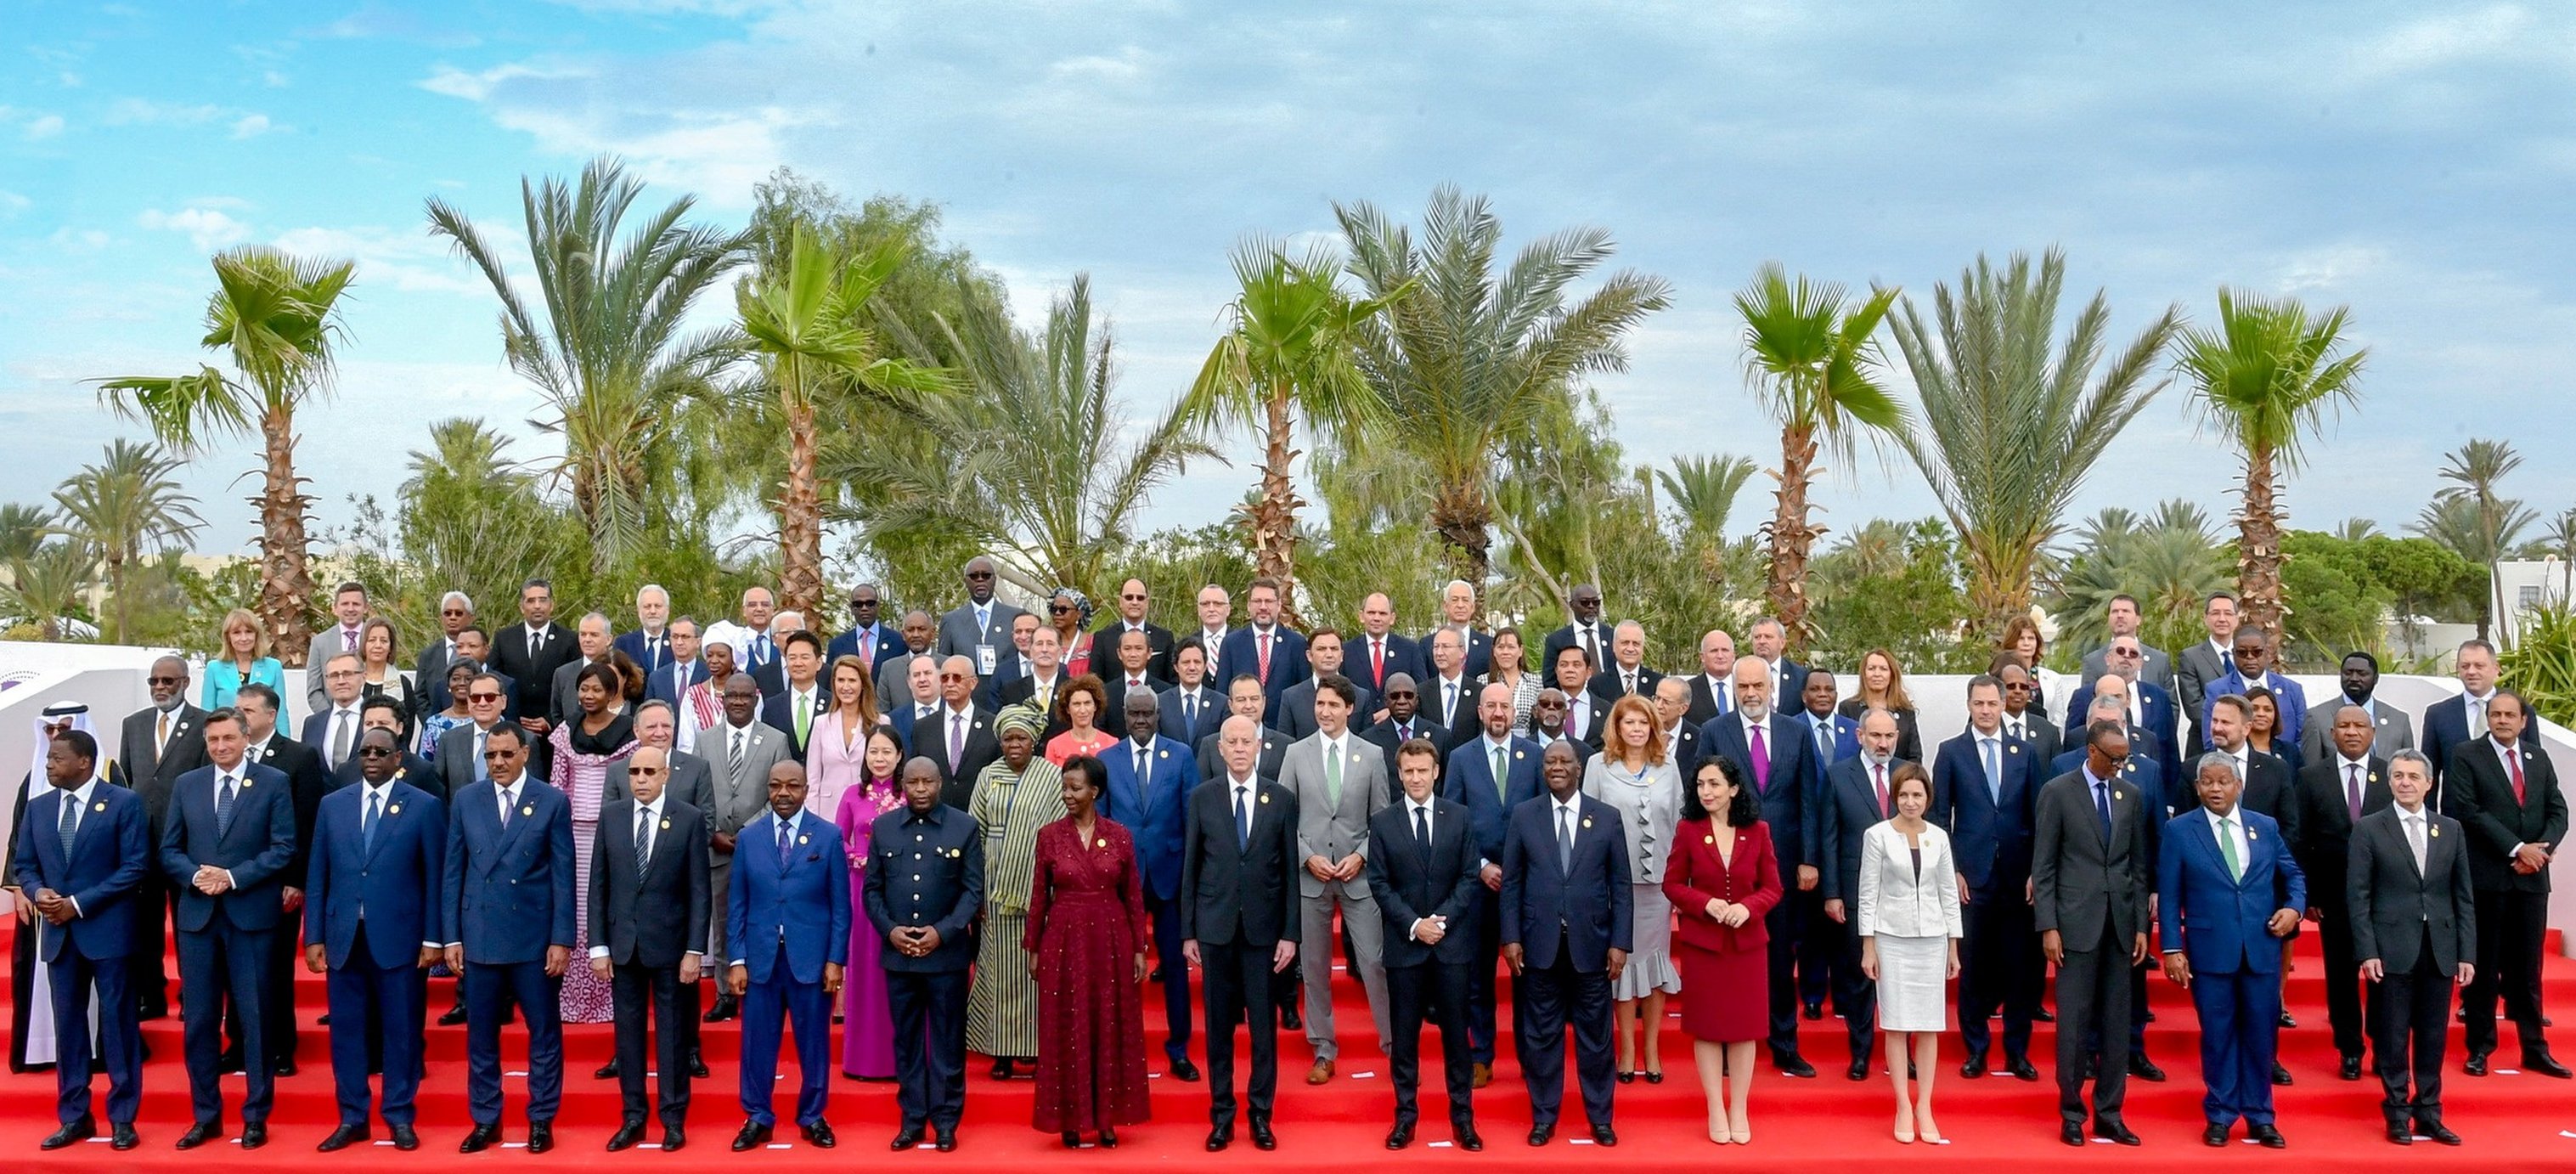 الرئيس التونسي قيس سعيد يقف مع مجموعة من المسؤولين من البلدان الناطقة بالفرنسية، في القمة الفرنكوفونية الثامنة عشرة في جربة، تونس، 19 نوفمبر/تشرين الثاني 2022.